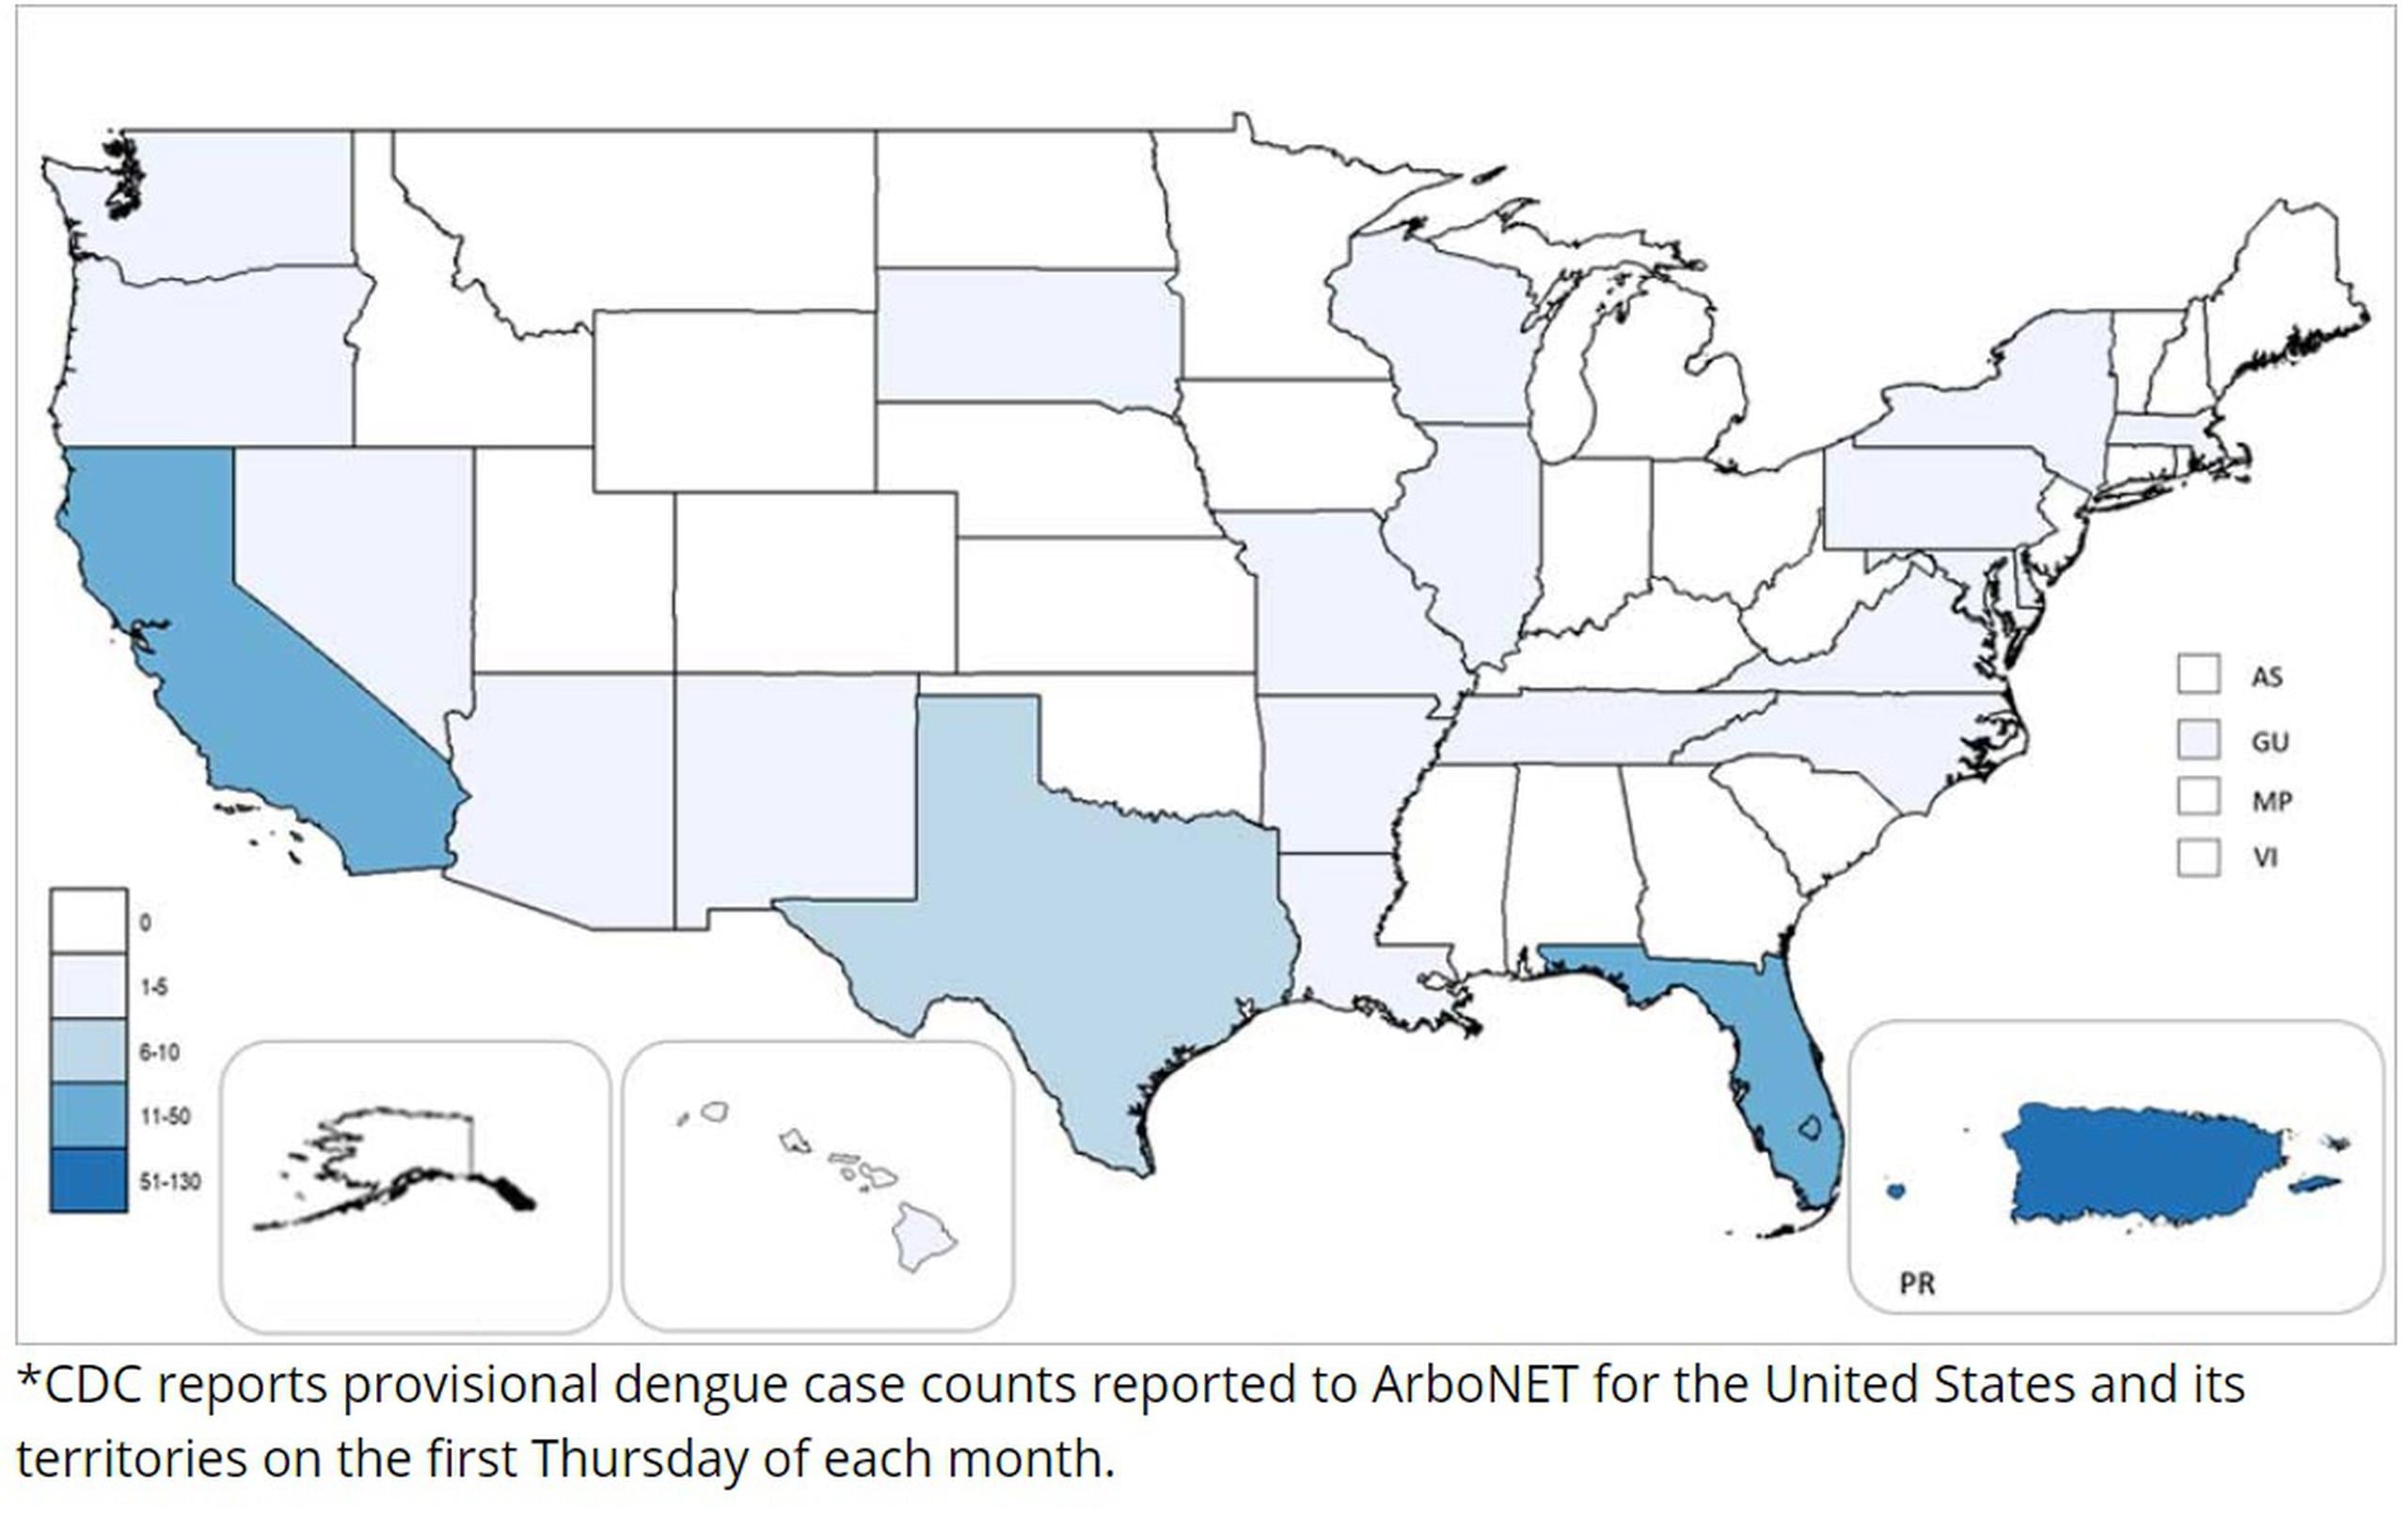 En la foto se muestra marcado de azul el mapa de Puerto Rico, como la región de Estados Unidos con más contagios de dengue en lo que va de 2020.